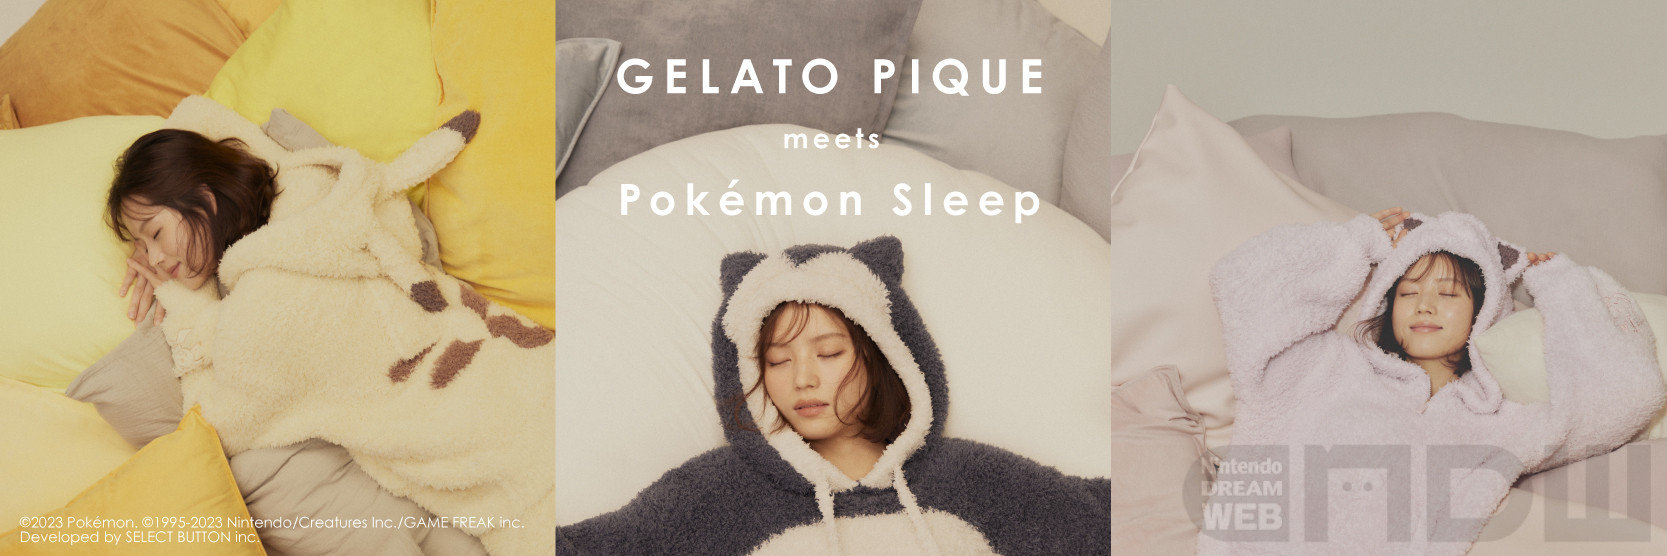 9月28日(木)正午発売『Pokémon Sleep』と「ジェラート ピケ」の ...